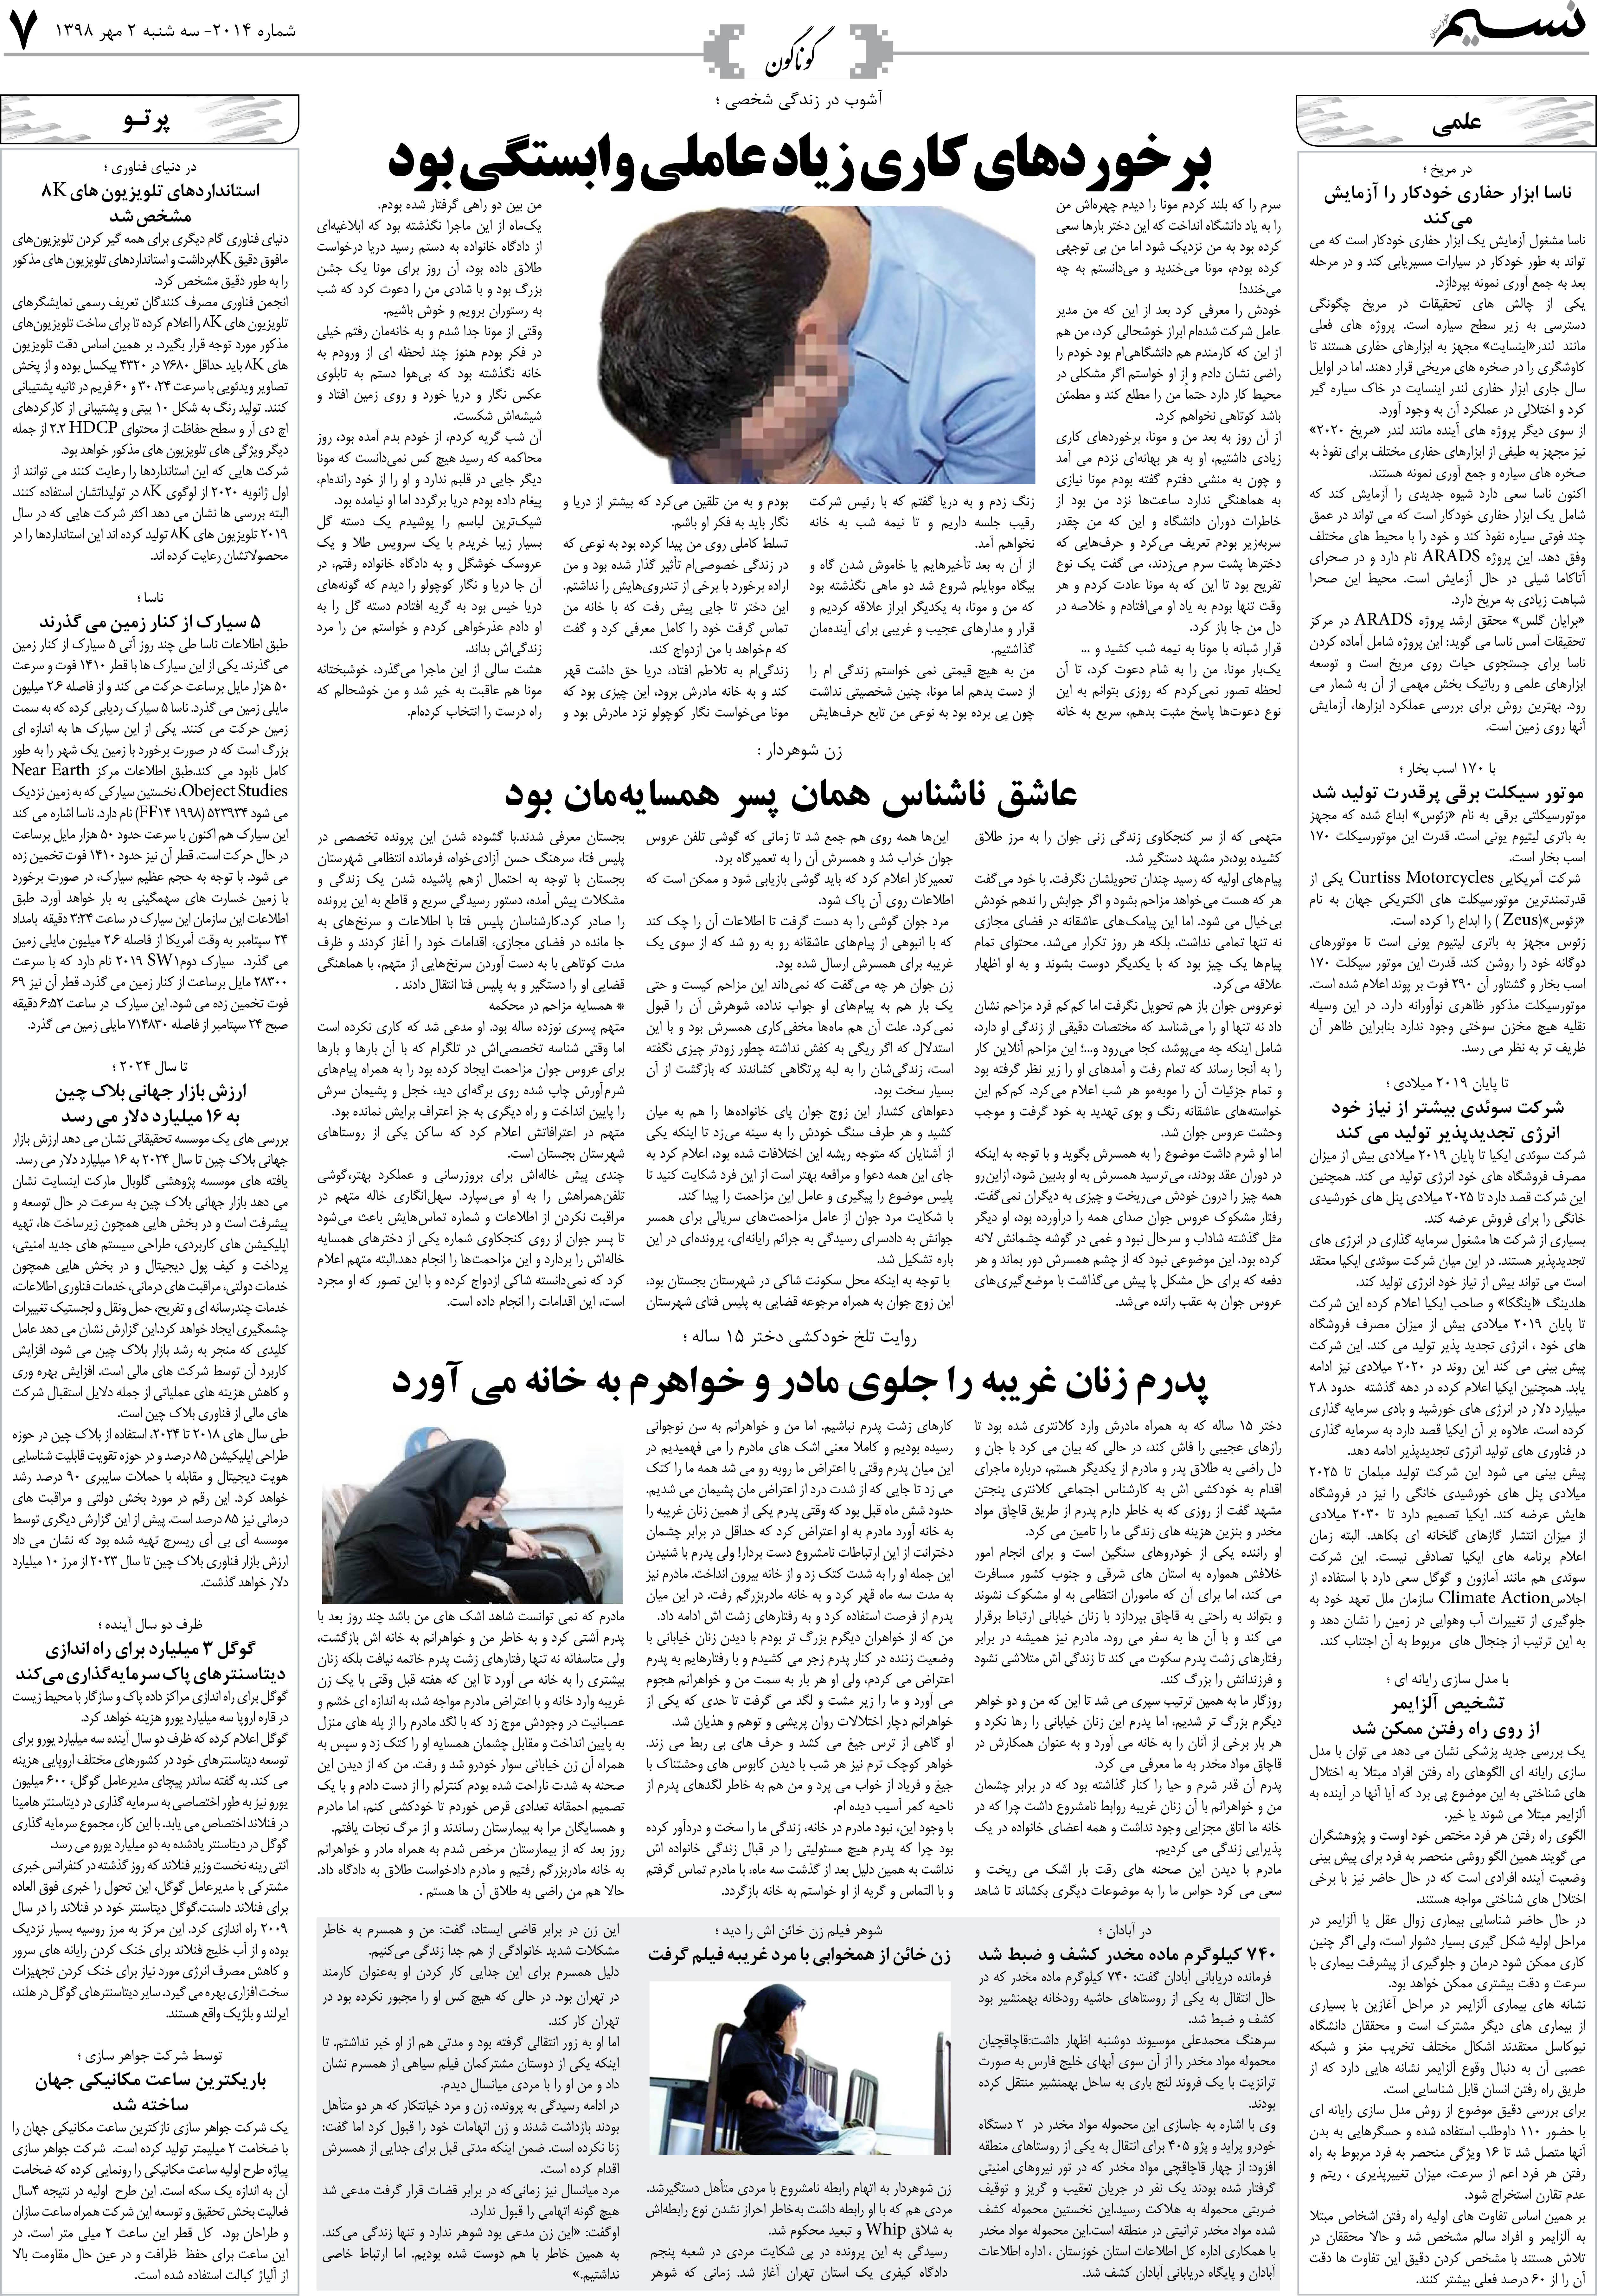 صفحه گوناگون روزنامه نسیم شماره 2014